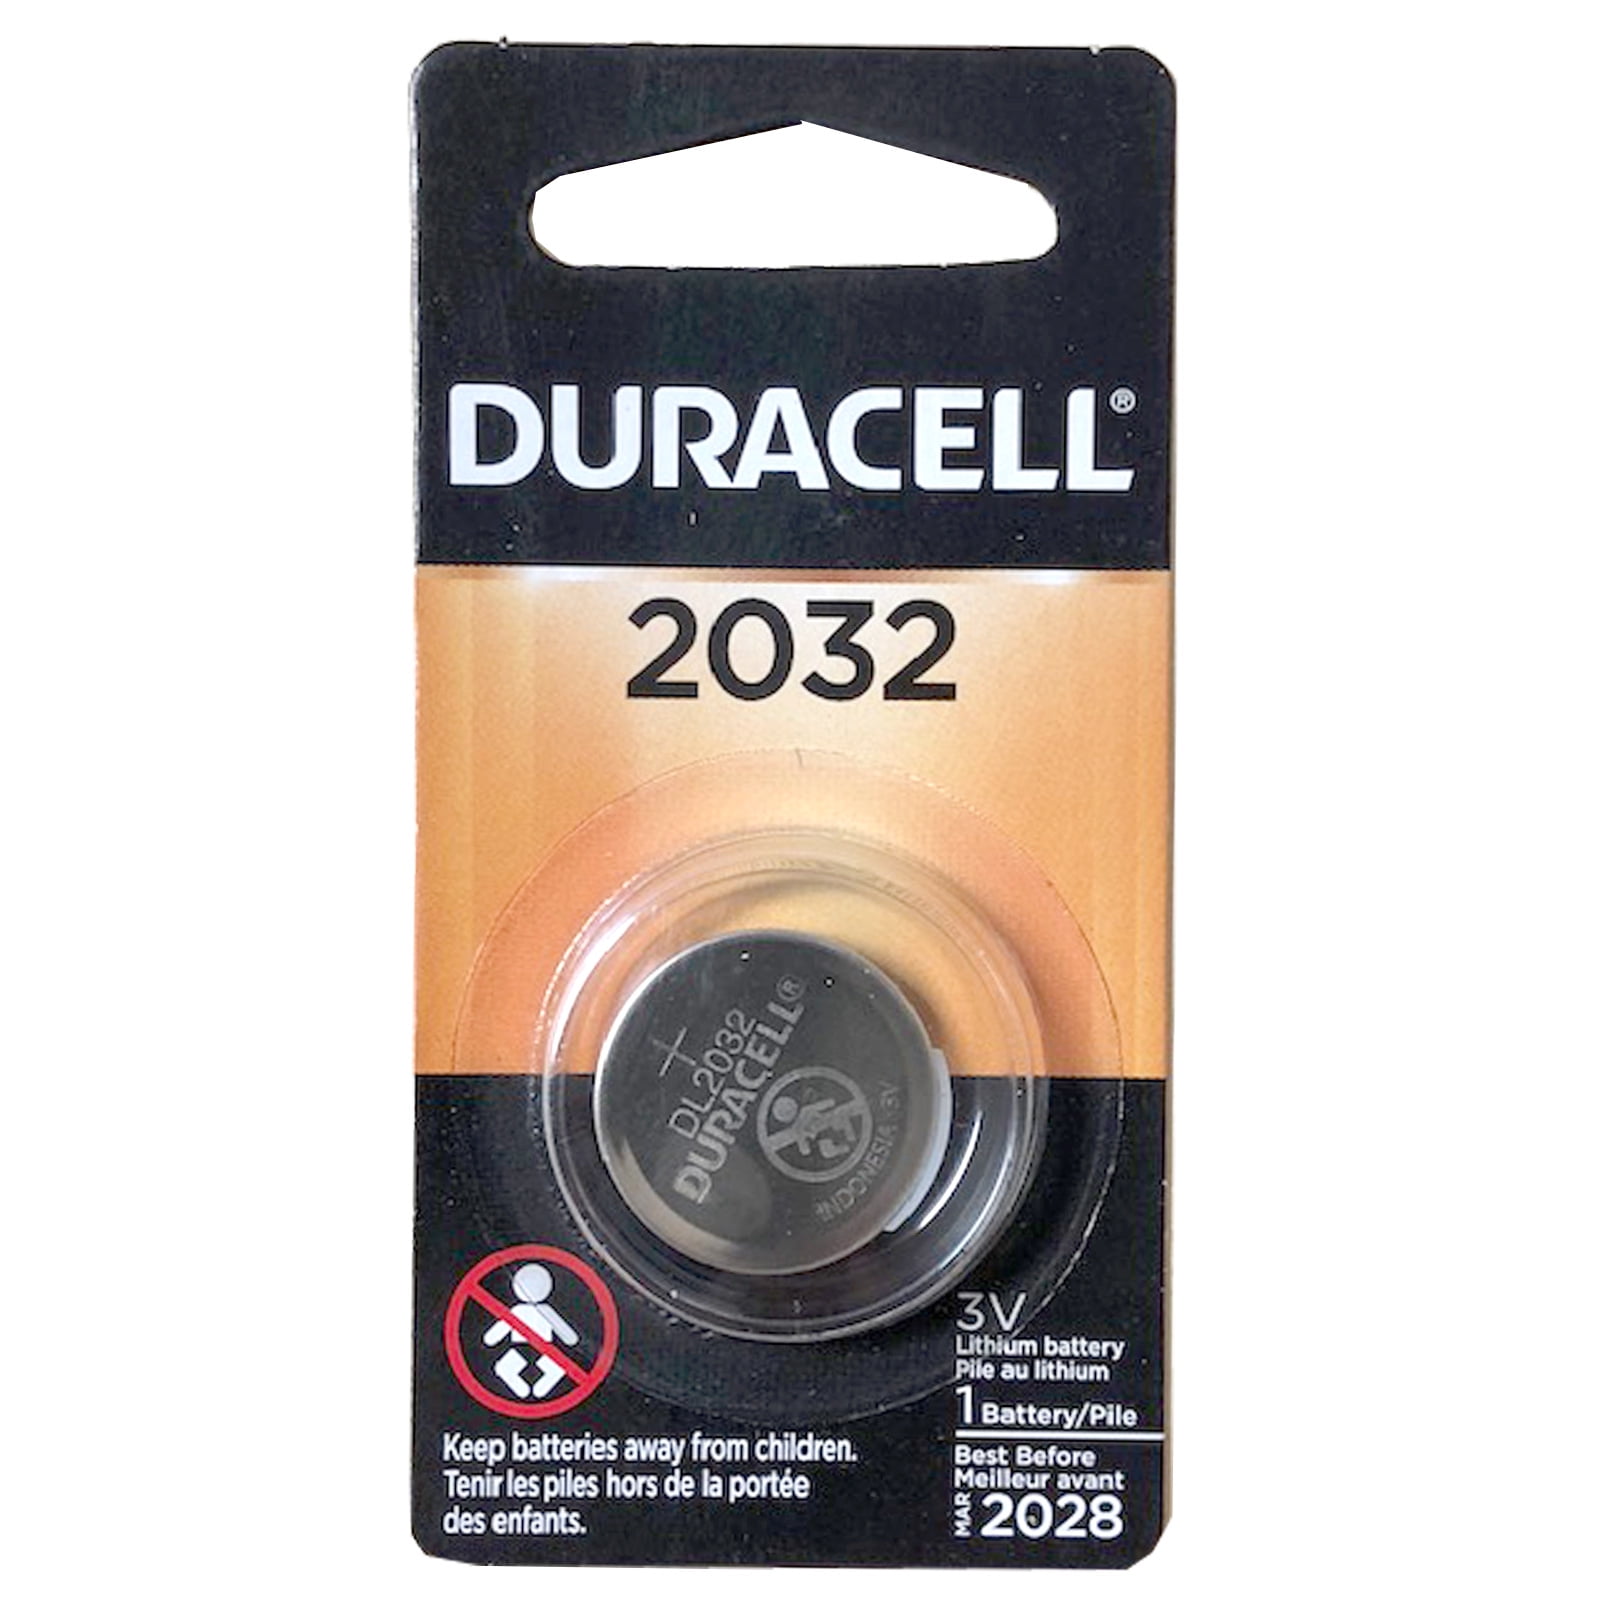 8 x Duracell Batterie CR2032 Lithium 3V Knopfbatterie CR 2032 NEU 2x 4er Blister 